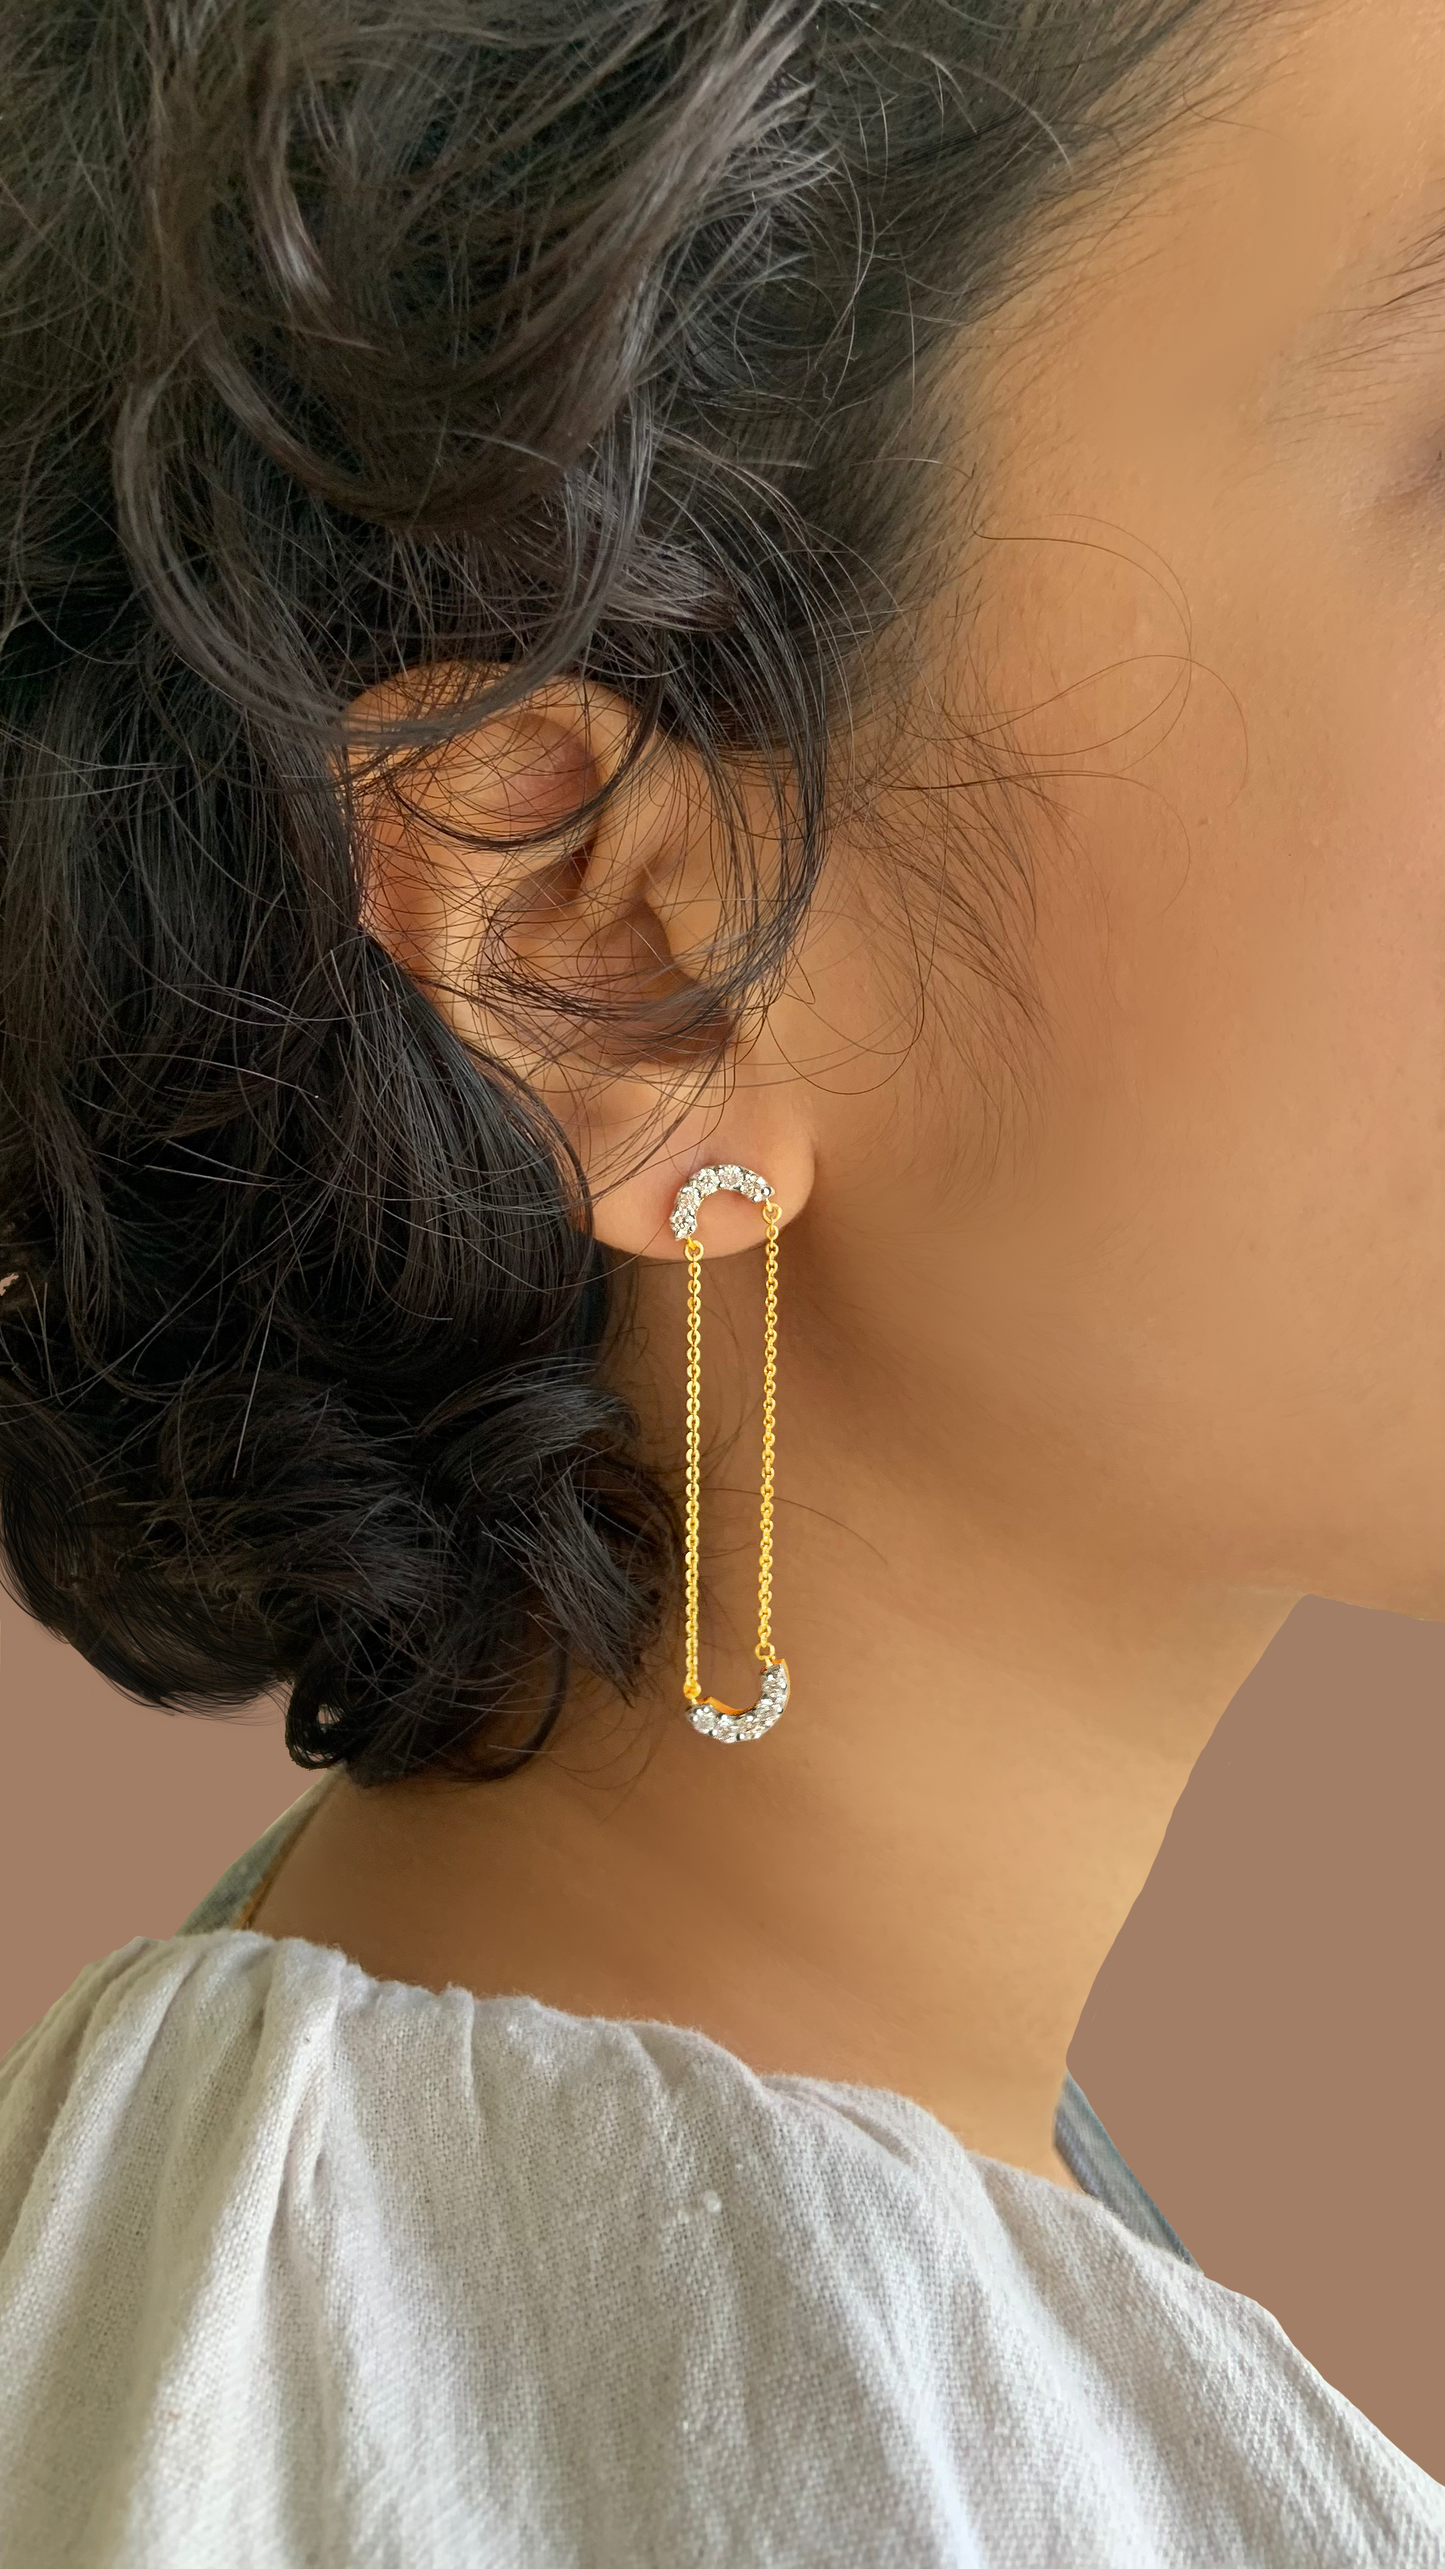 Luna Diamond Earrings